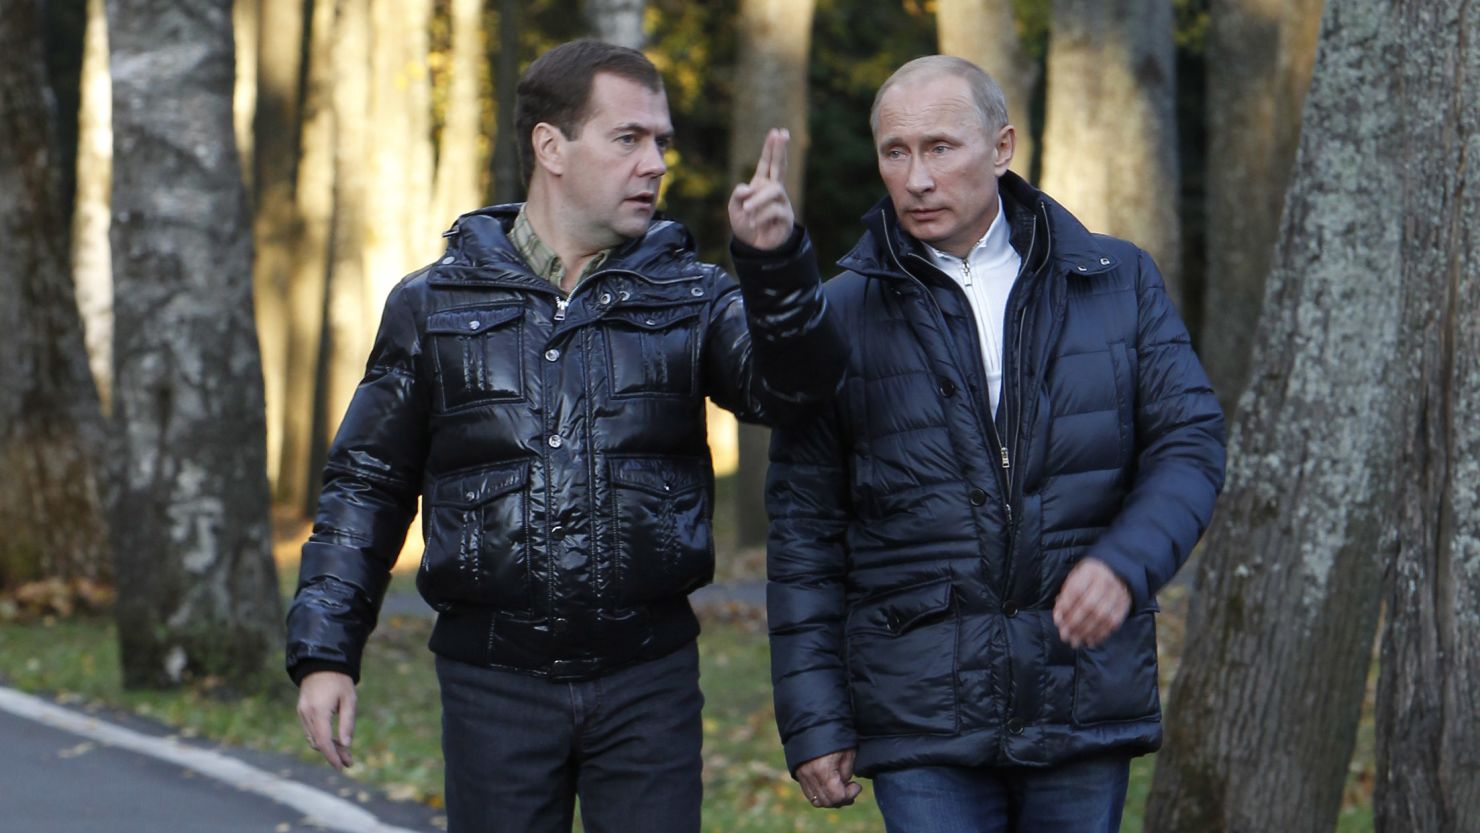 Russia's President Dmitry Medvedev, left, walks with Prime Minister Vladimir Putin in the Tver region on September 24.